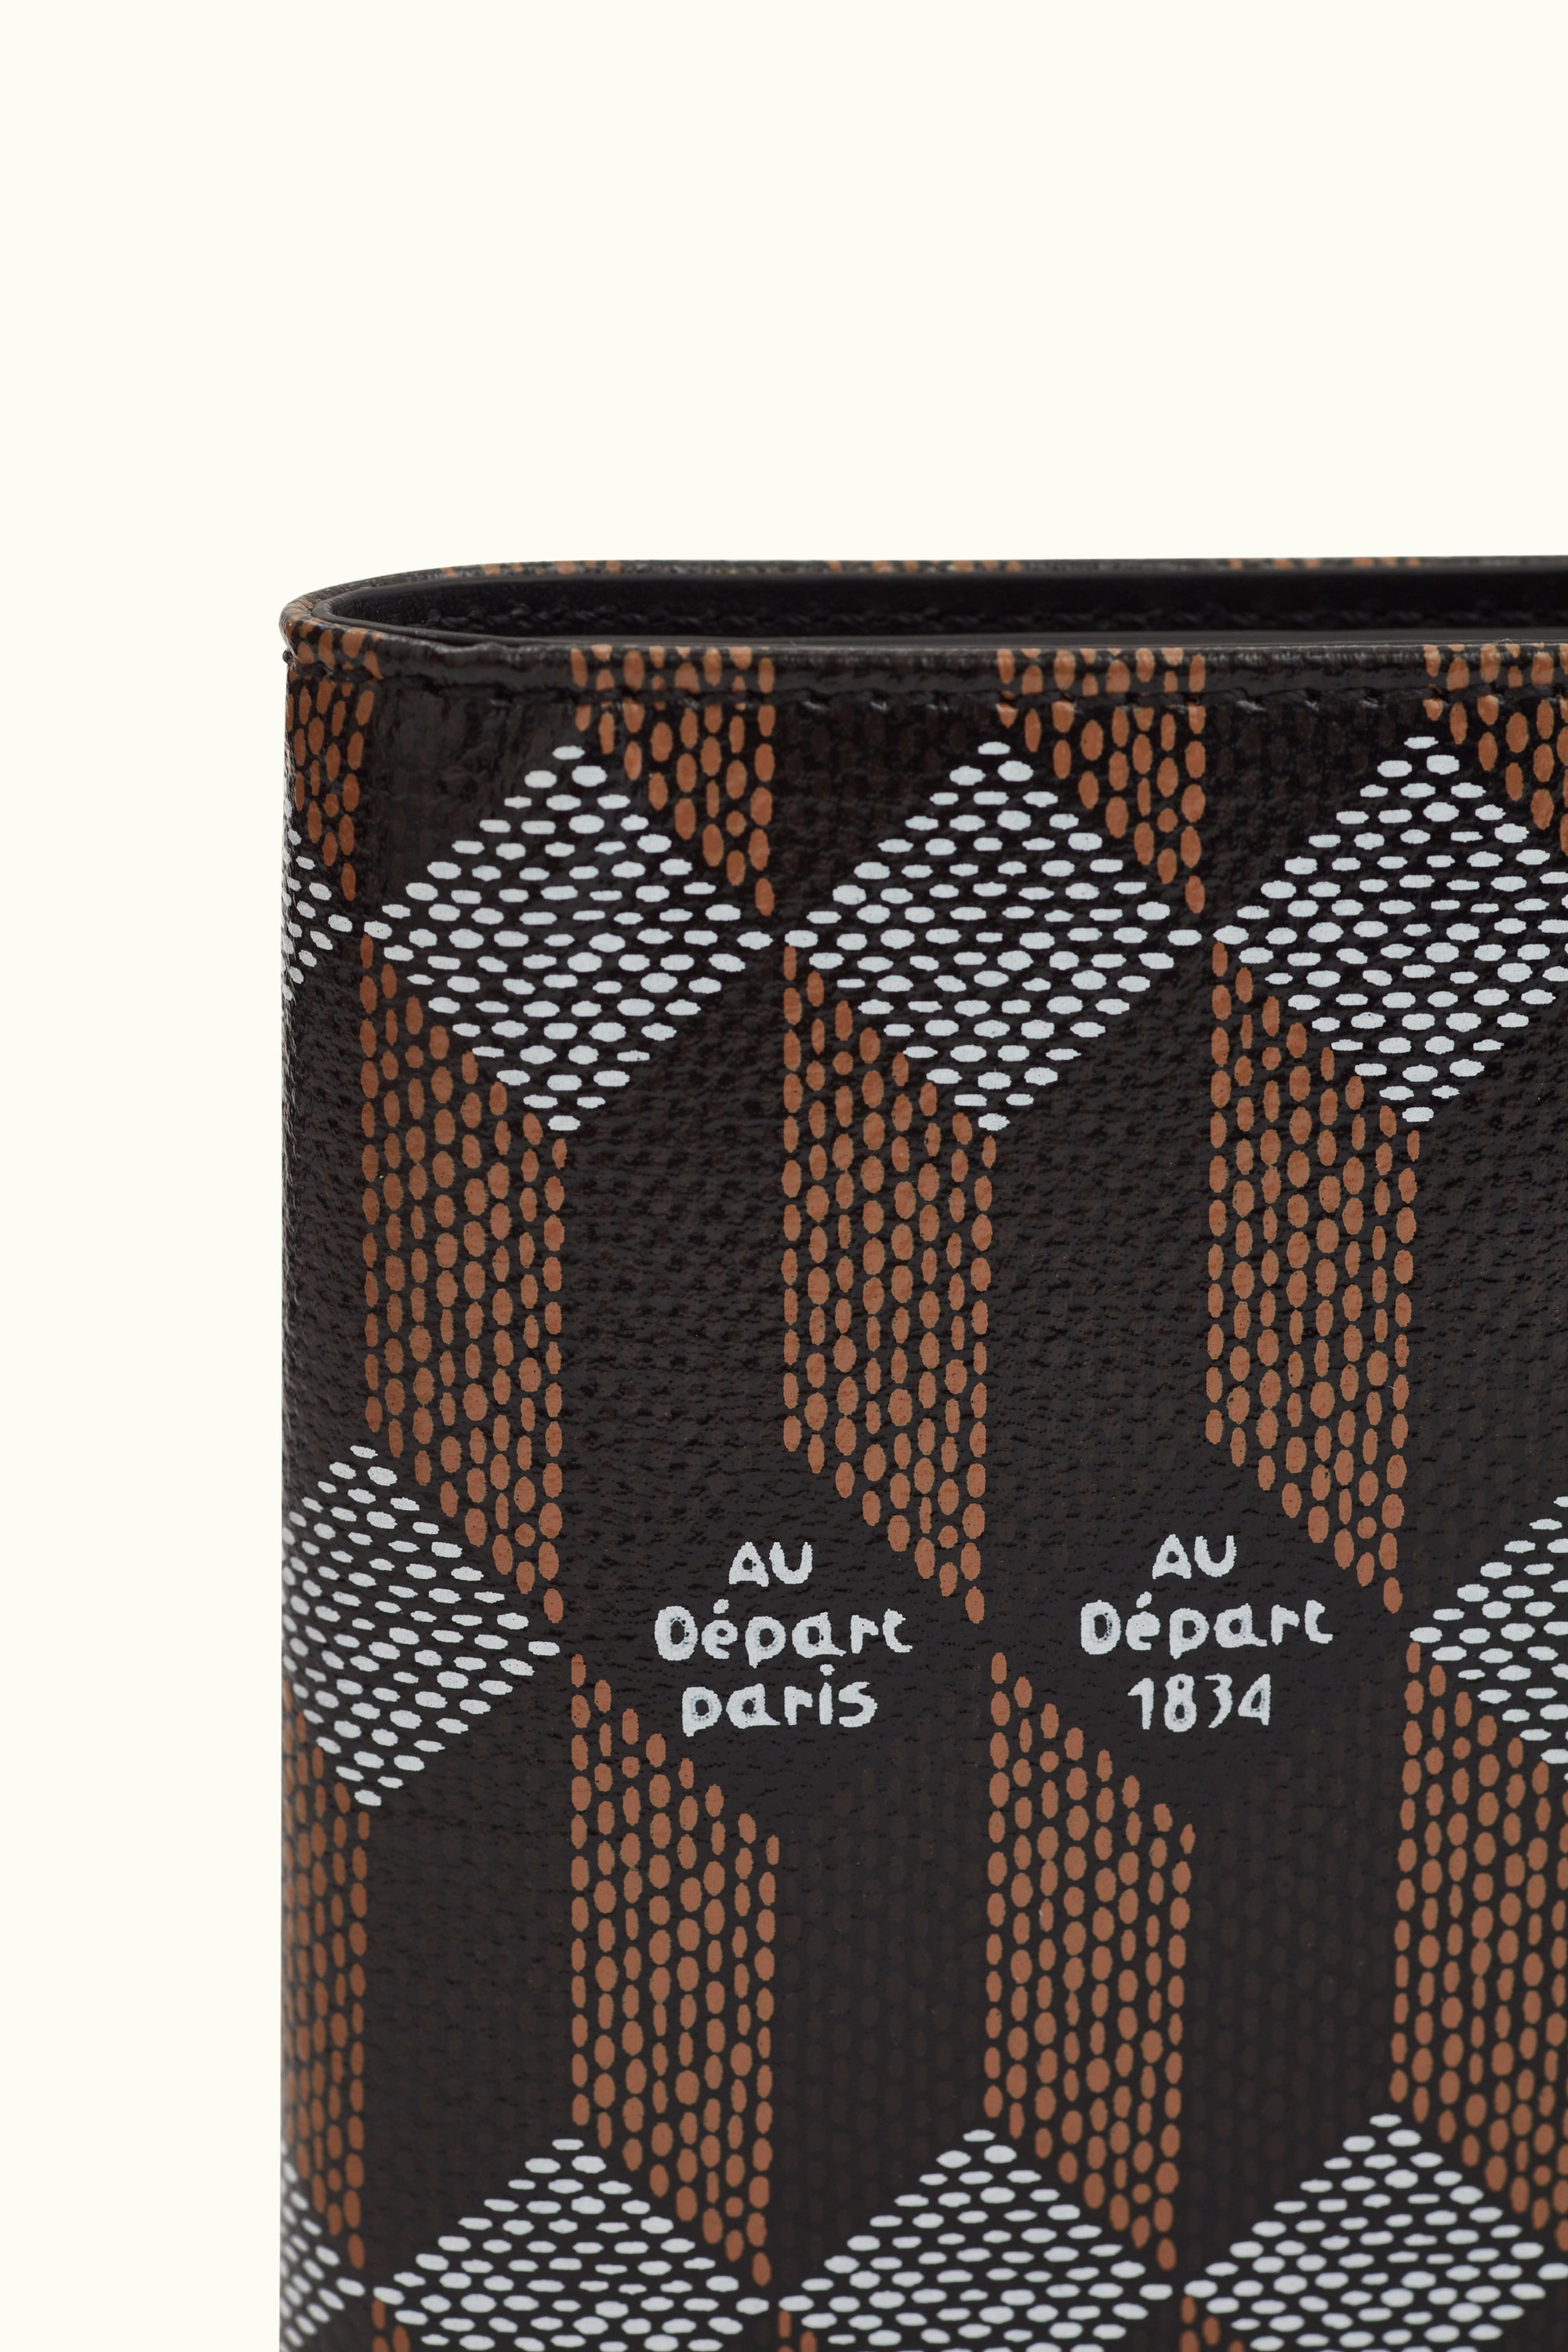 Louis Vuitton Pocket Organizer Damier Graphite in Canvas - US